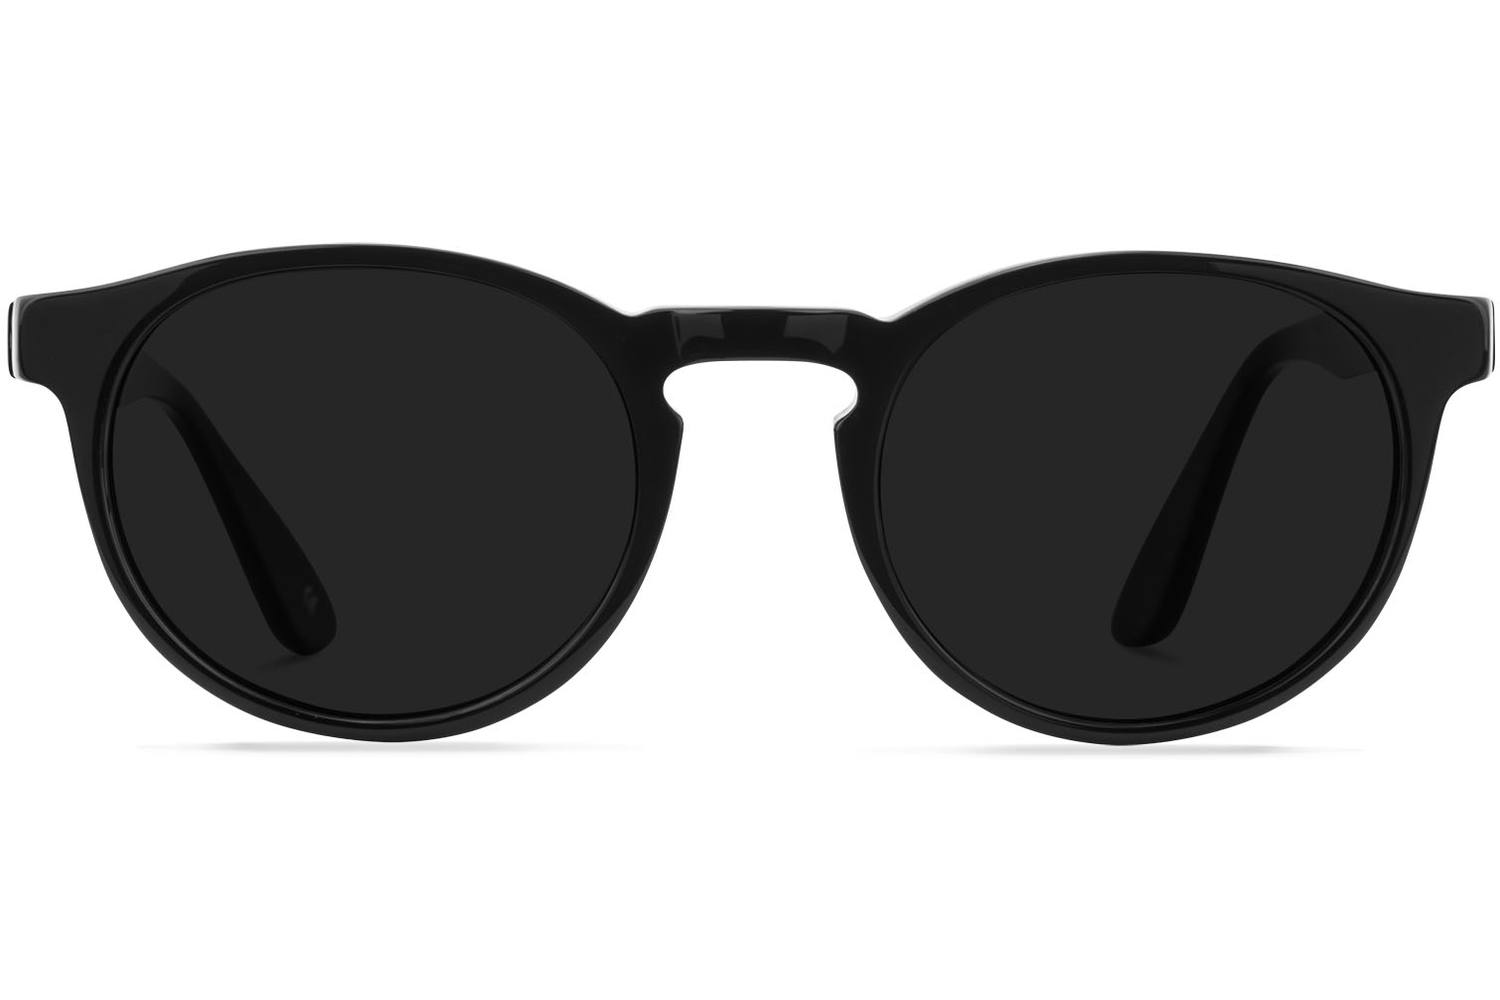 Accessoires Zonnebrillen Ronde zonnebrillen laundry Ronde zonnebril zwart-lila casual uitstraling